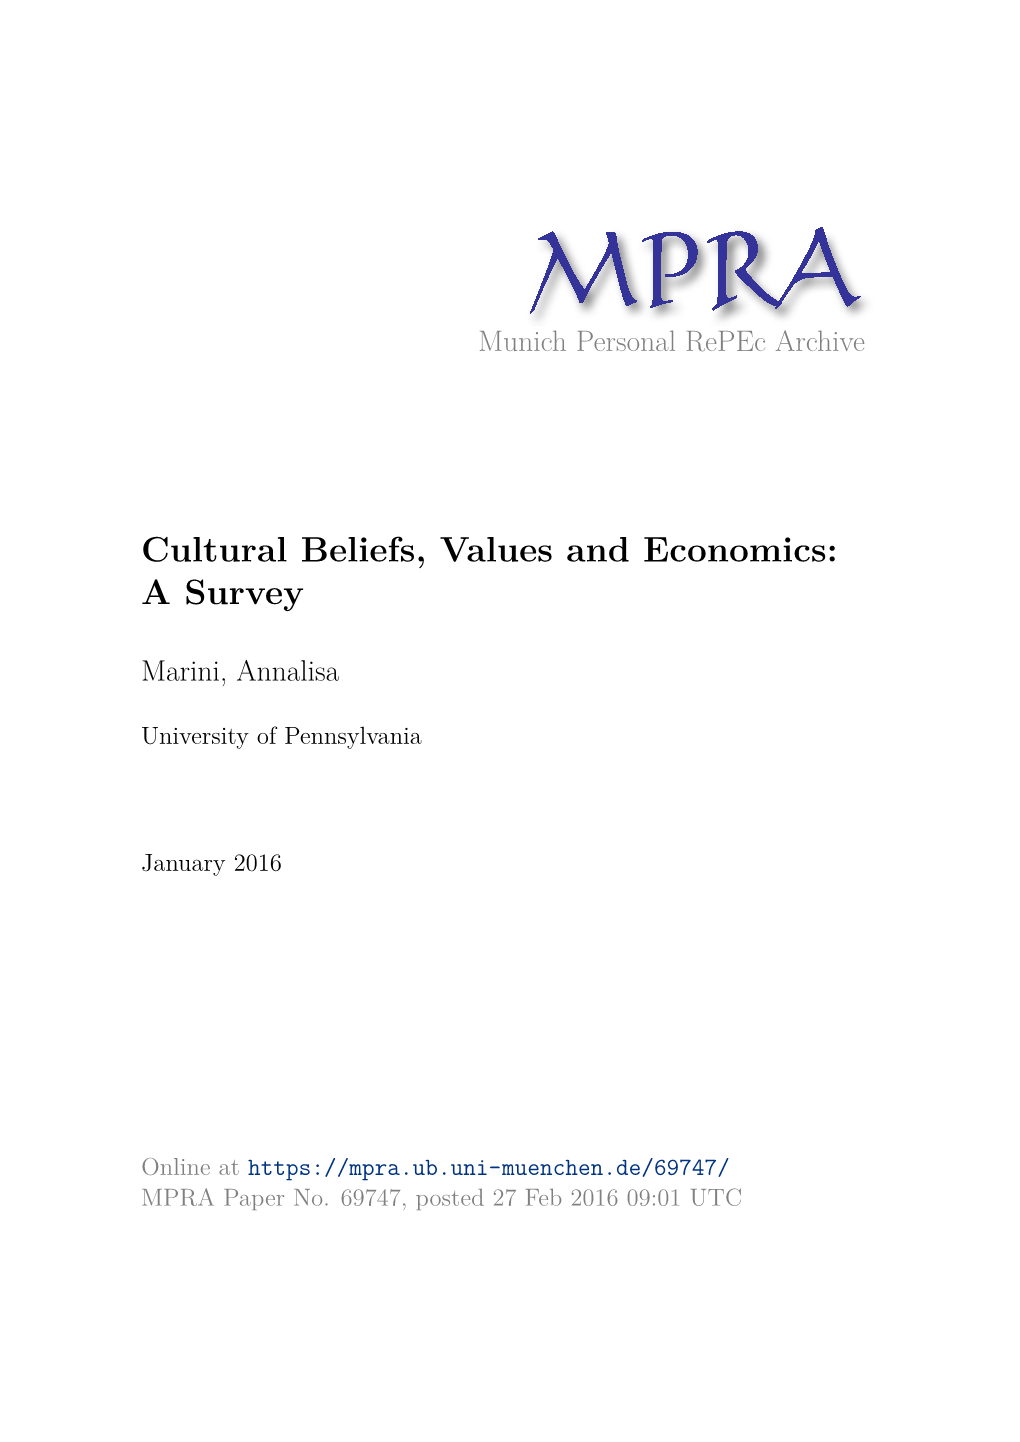 Cultural Beliefs, Values and Economics: a Survey